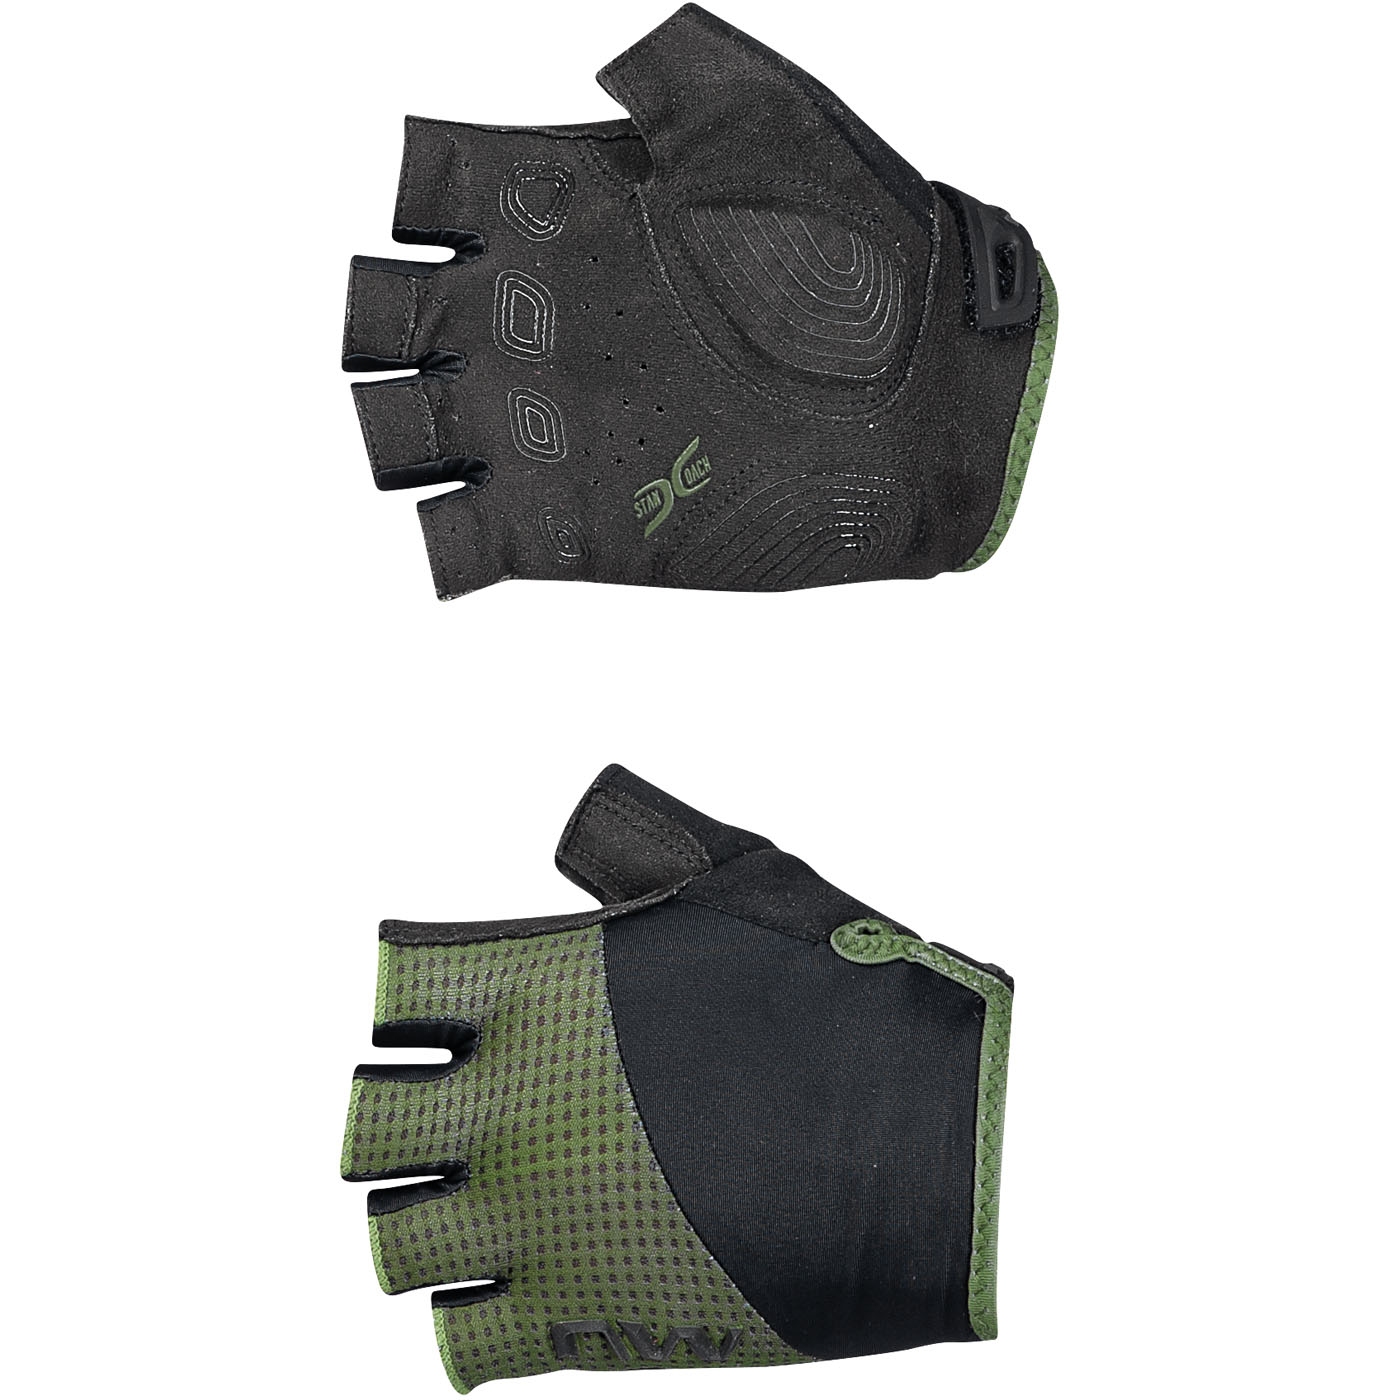 Produktbild von Northwave Fast Kurzfinger-Handschuhe Herren - forest green/schwarz 61